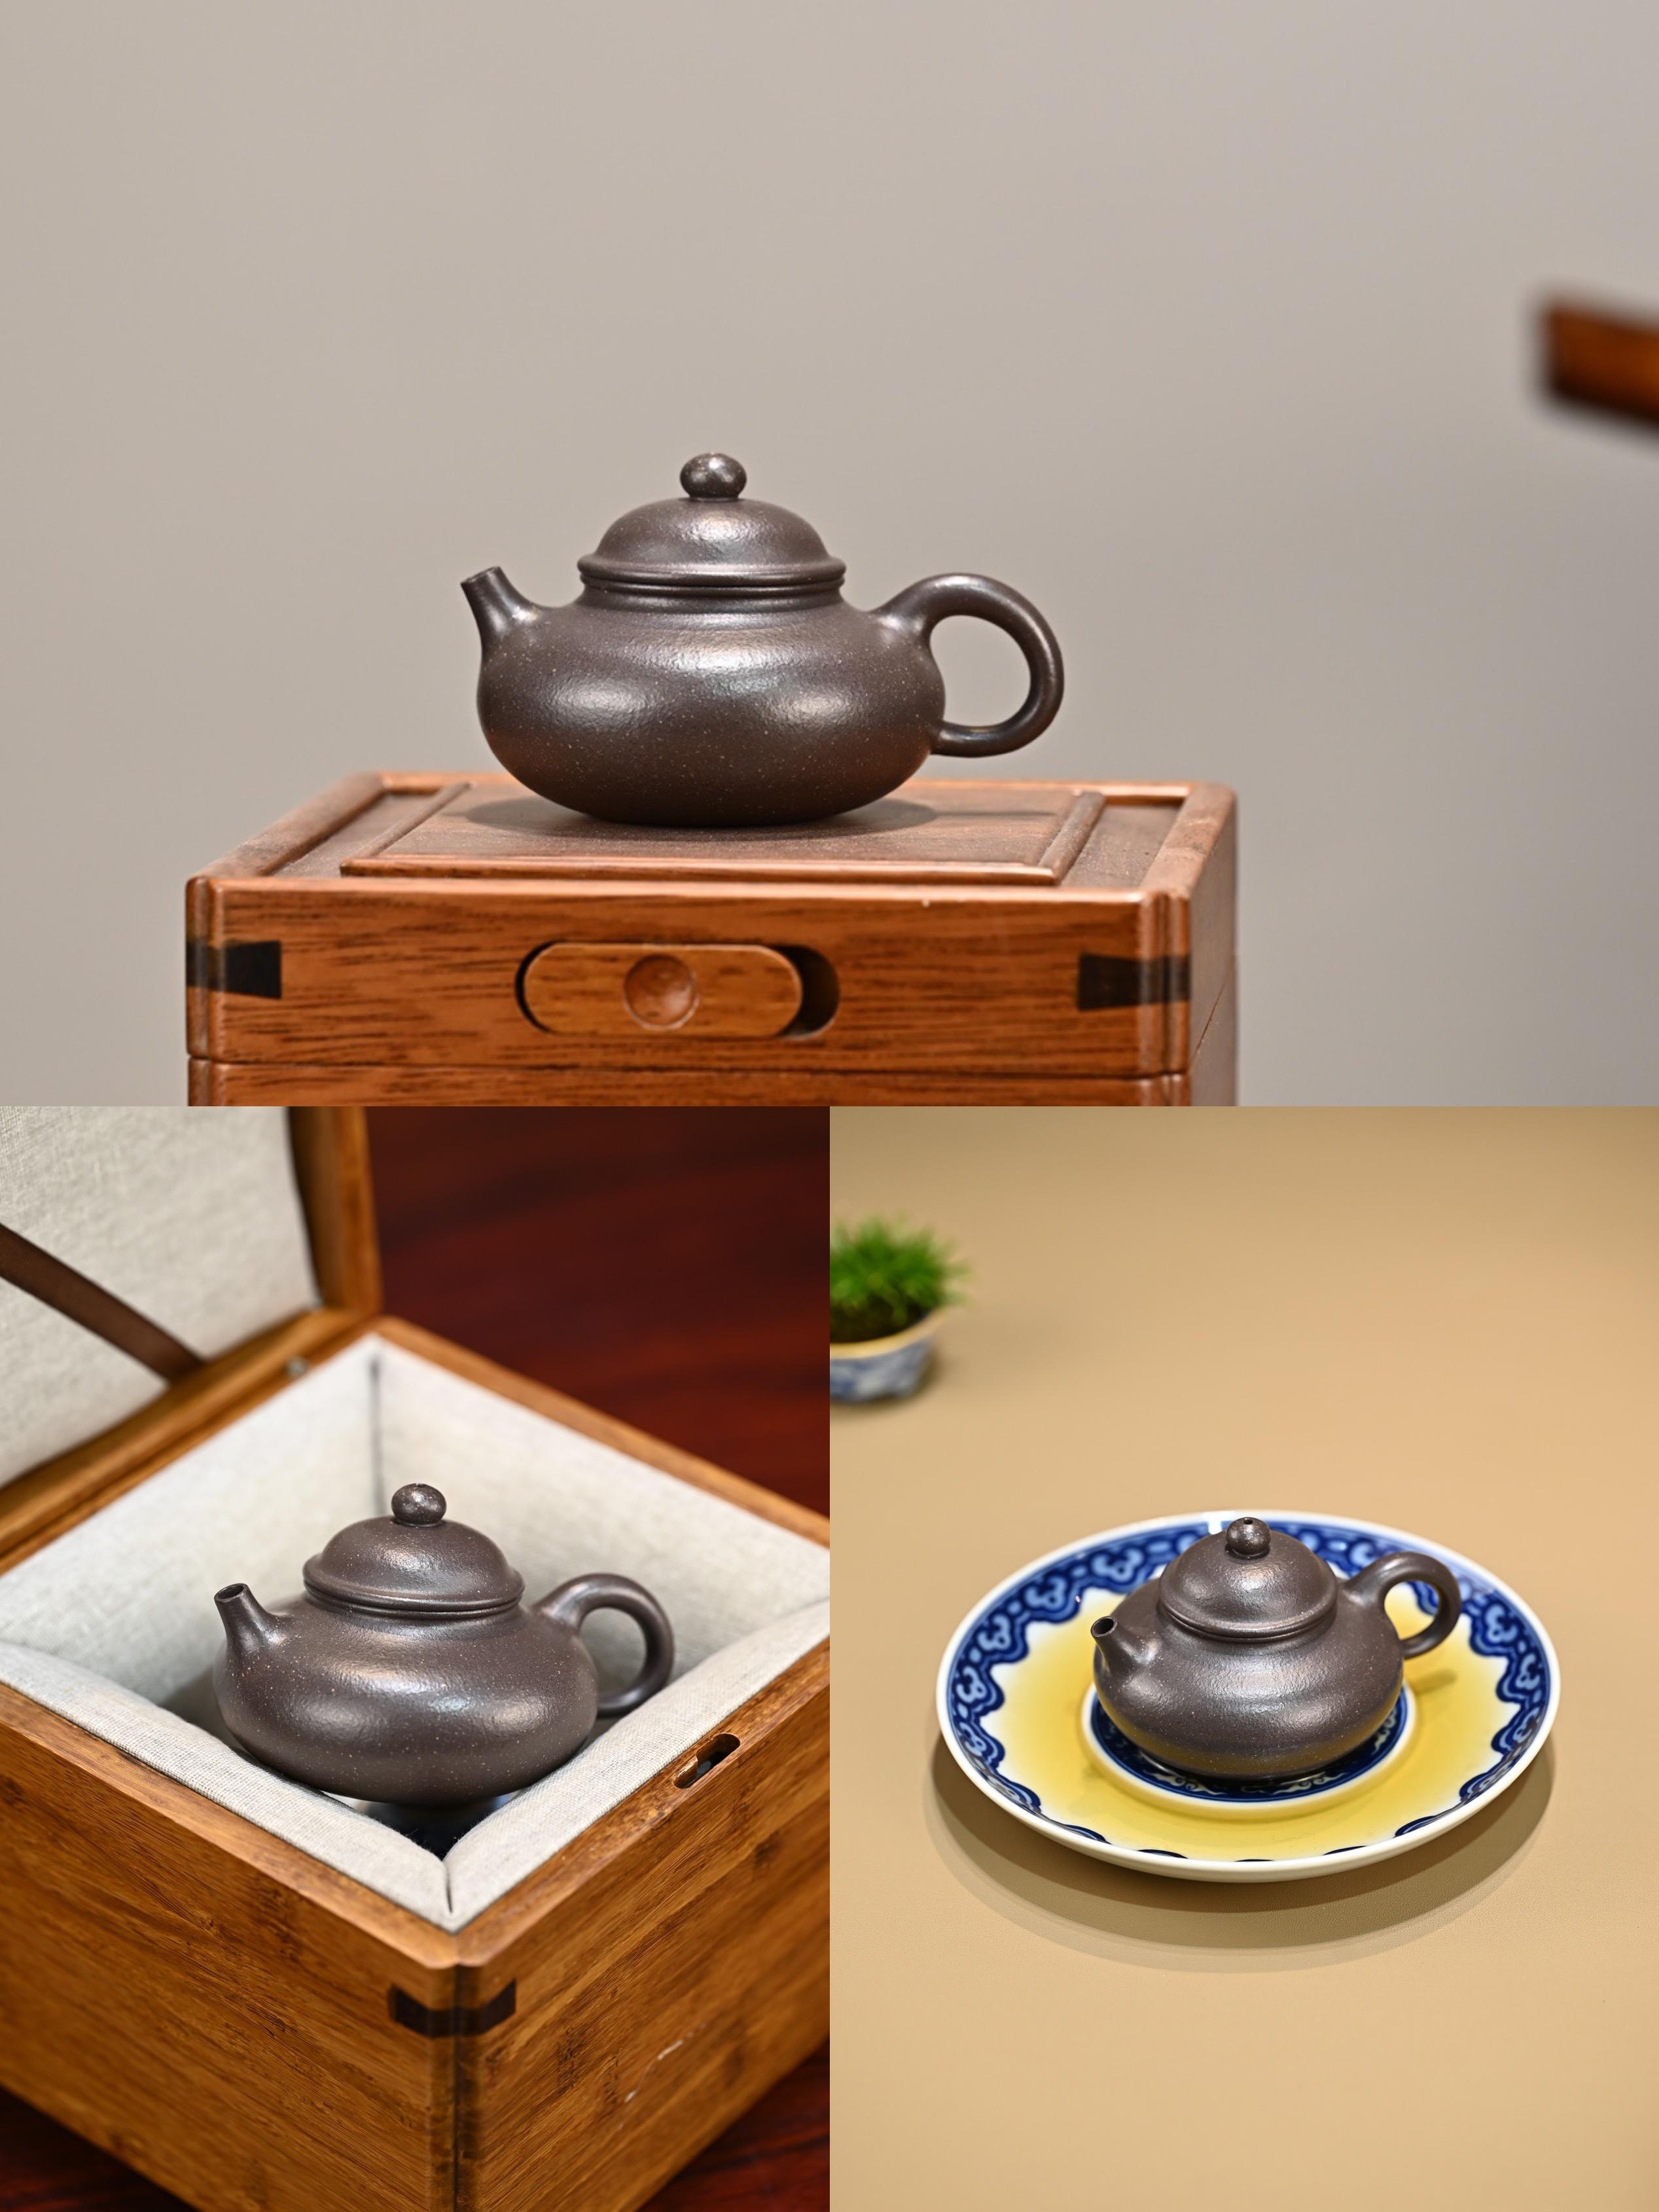 紫砂器型容天壶容天壶取材于佛教文化有大度能容之意用之养气明心见性